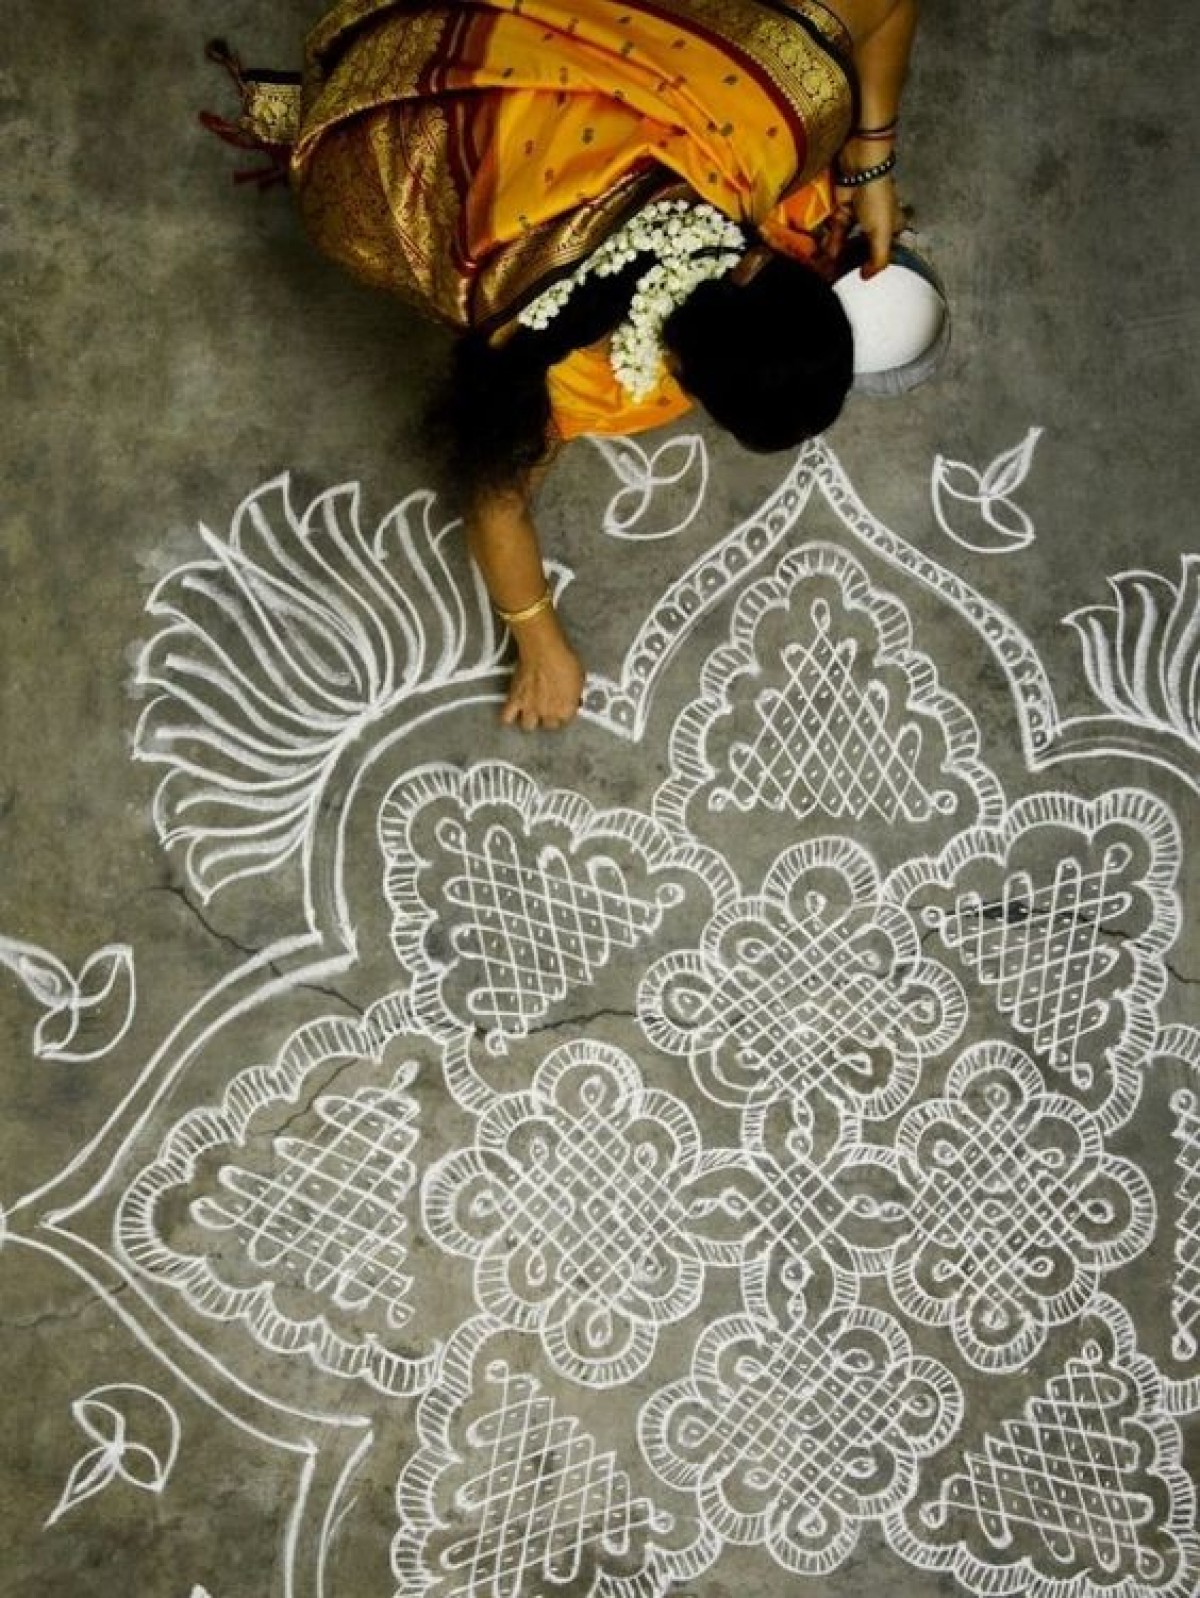 Elevate Your Onam Celebration with Captivating Rangoli Designs